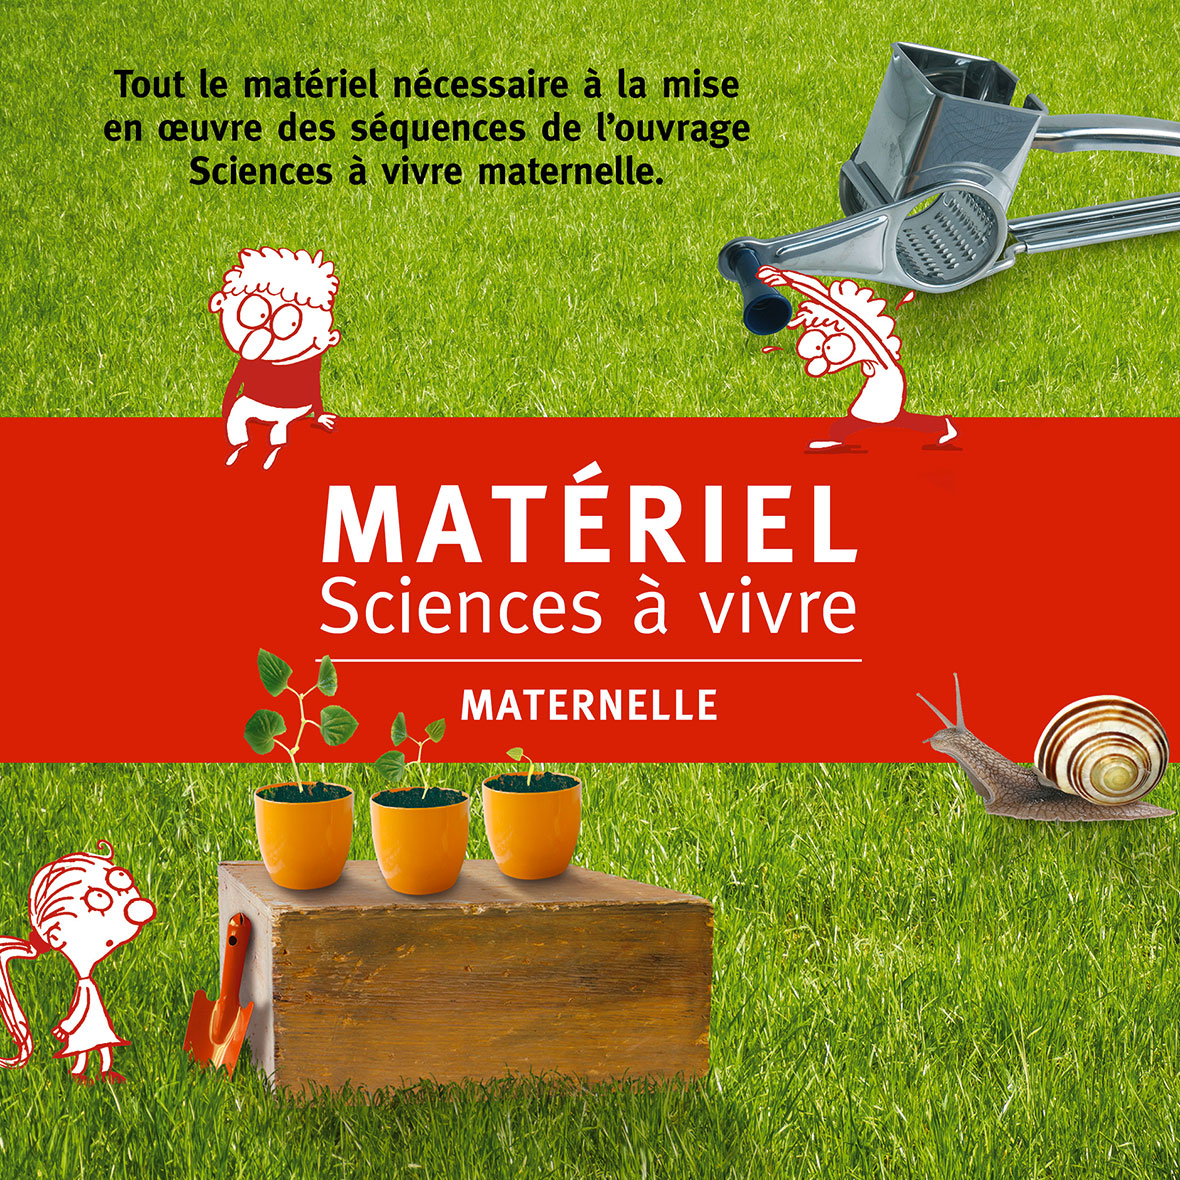 Materiel sciences a vivre maternelle miniature 1 acces editions